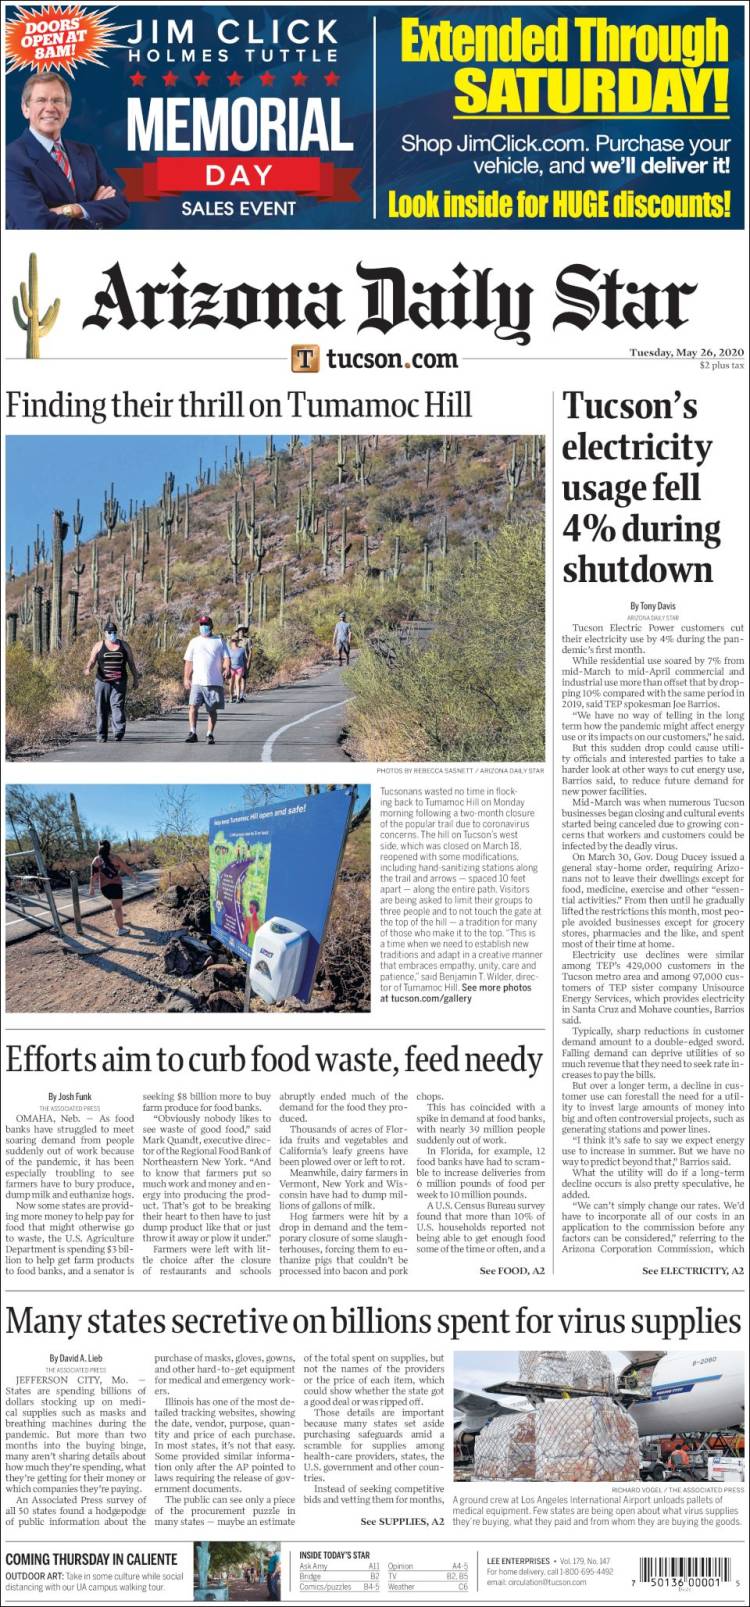 Portada de Arizona Daily Star (USA)